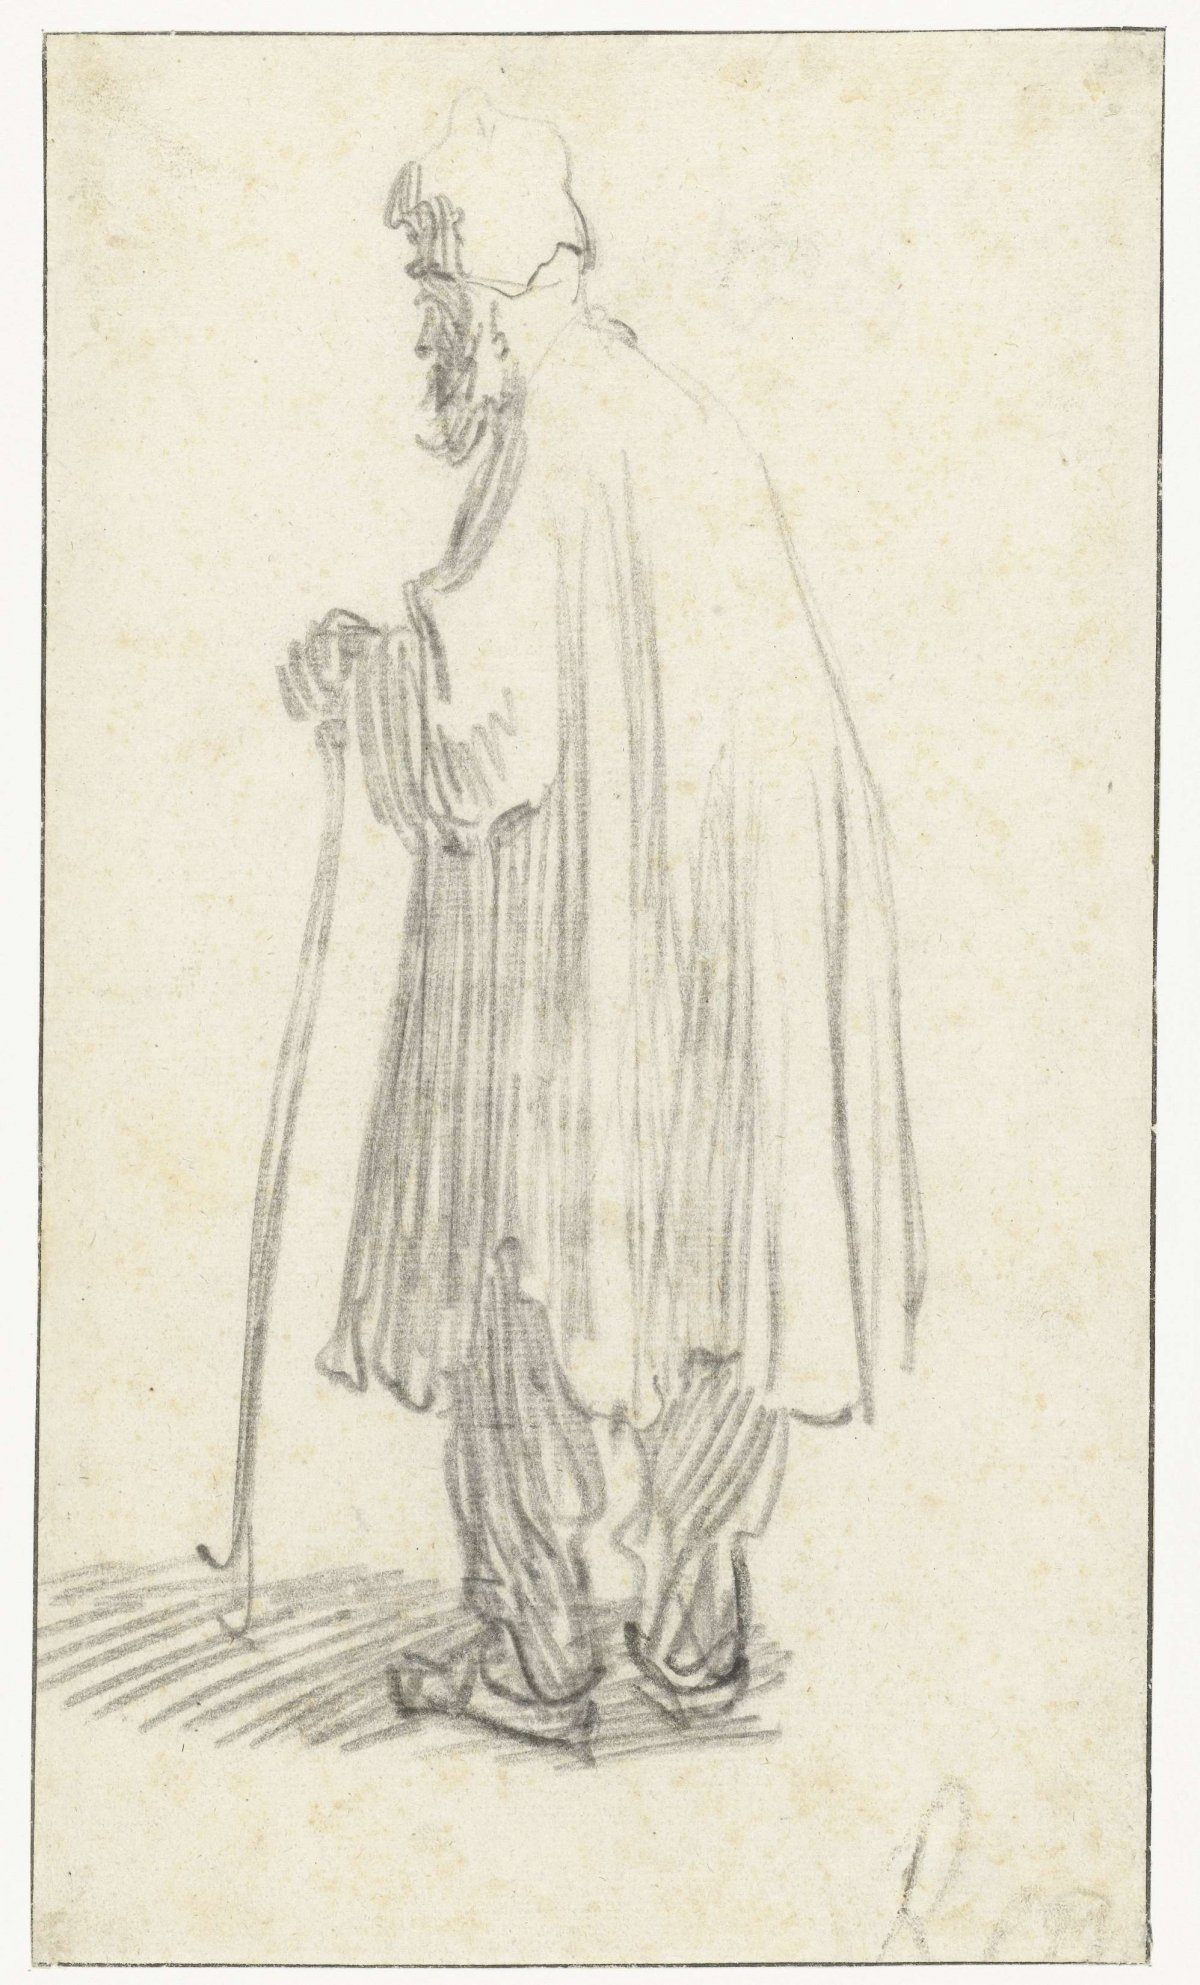 Standing Man with a Stick, Facing Left, Rembrandt van Rijn, c. 1629 - c. 1630